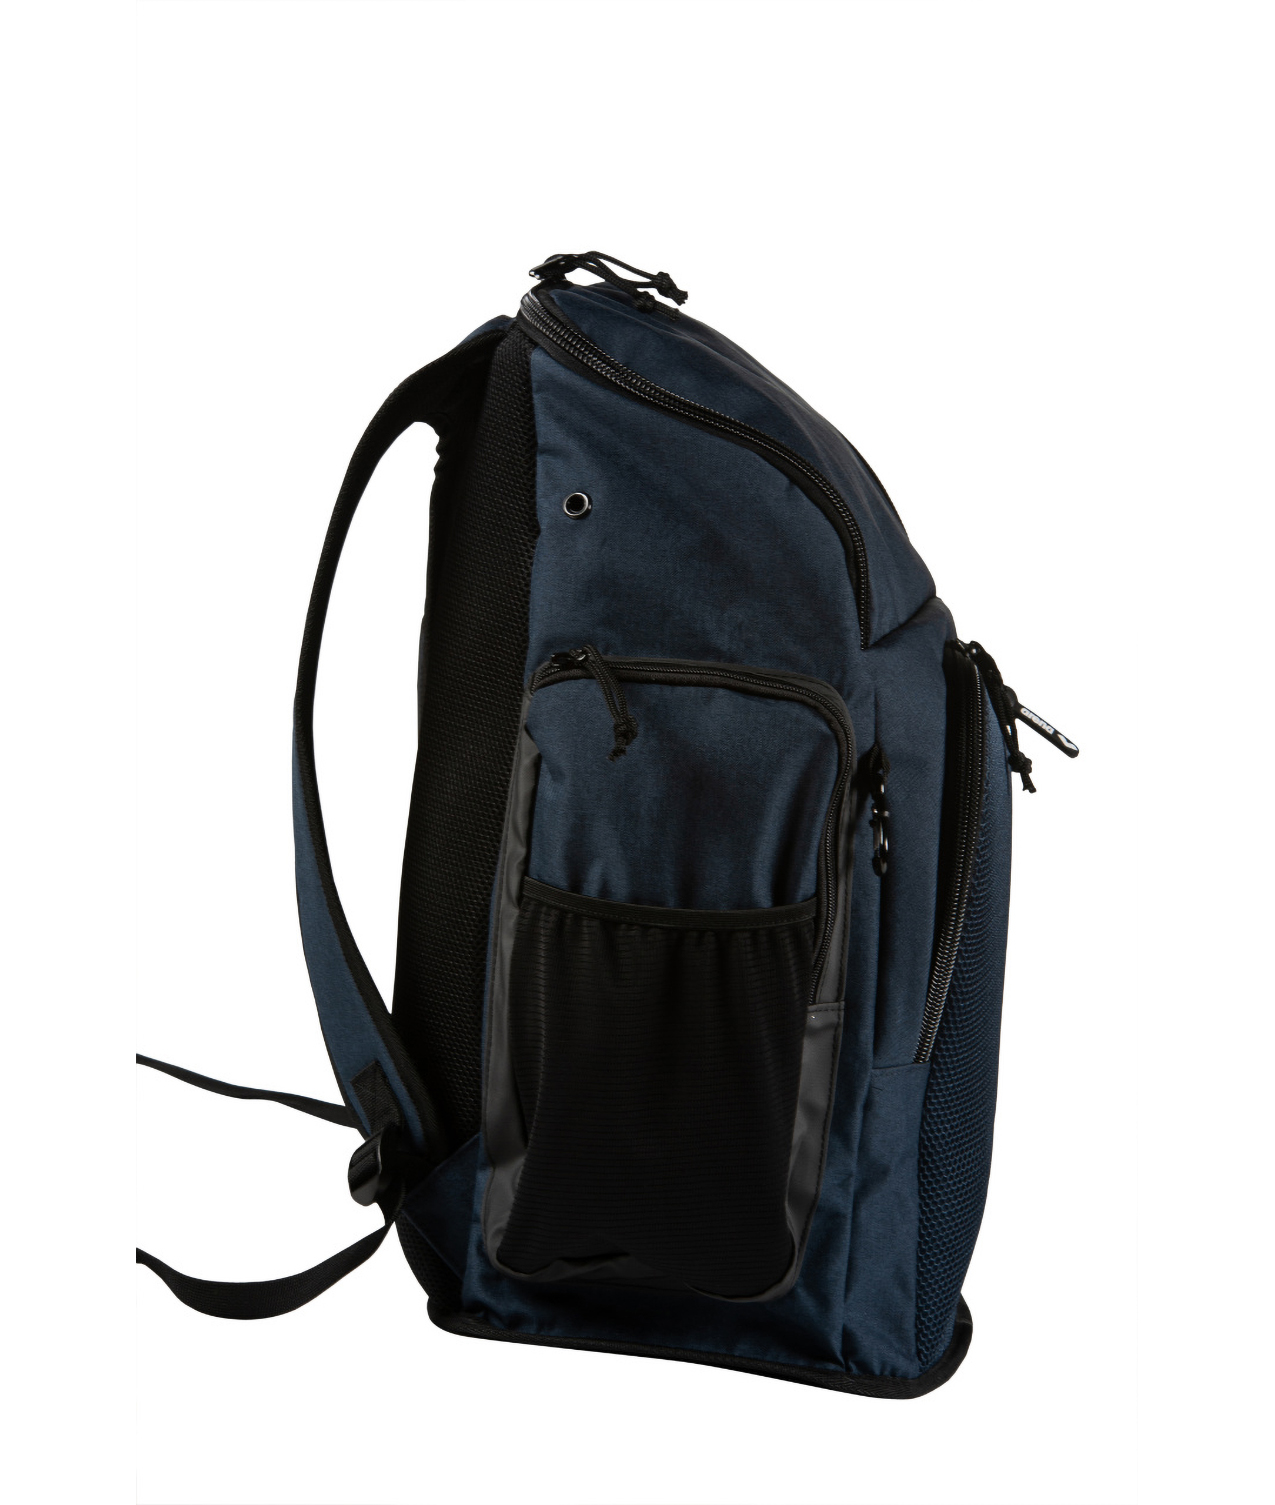 Nuevas mochilas Arena Team Backpack con una capacidad de 45L 🌈 . Envío  gratis 🚚 www.ciudaddelnado.com.ar 📍 #CIUDADDELNADO #fina…